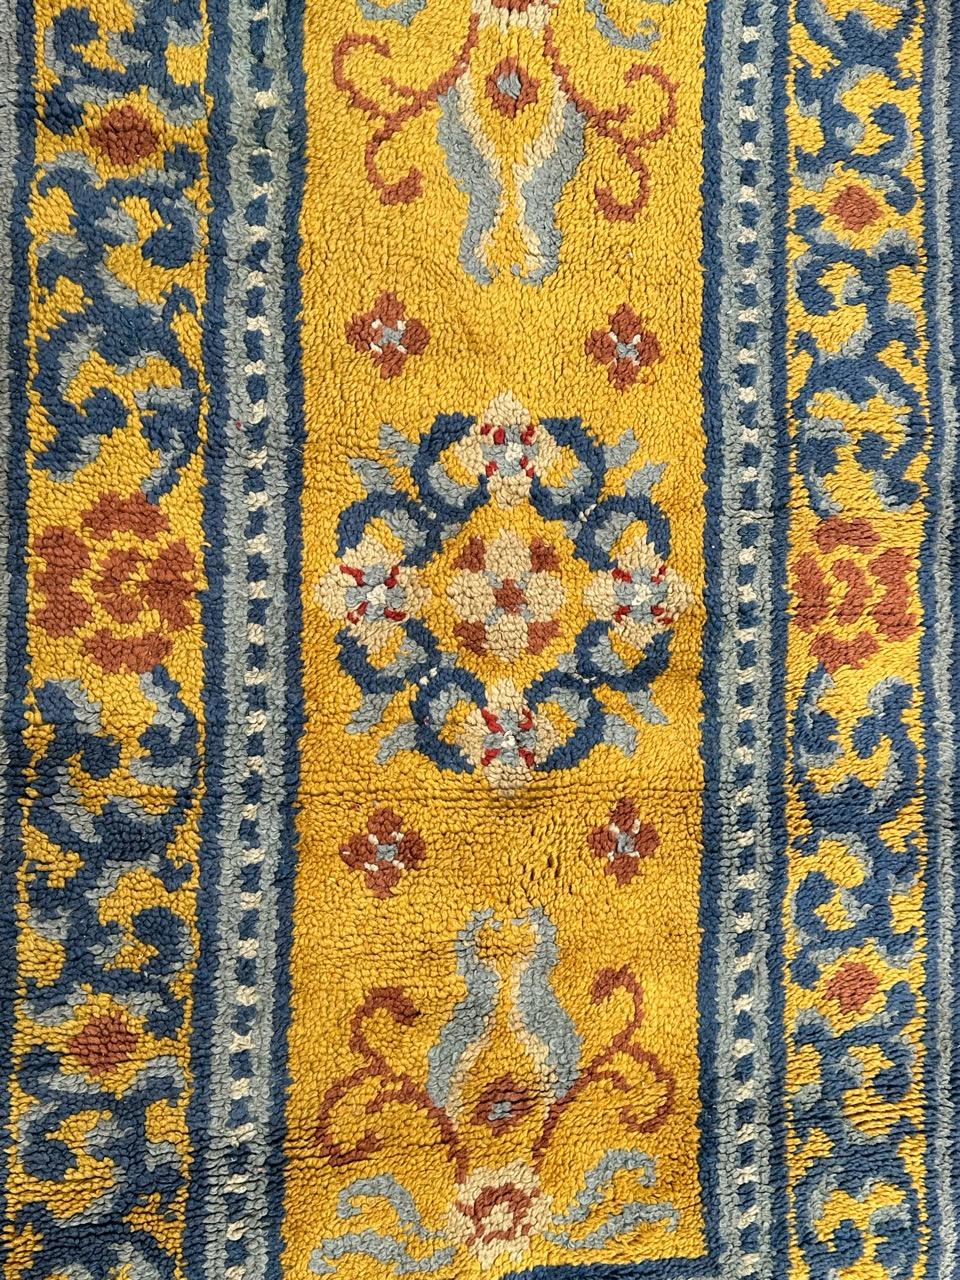 Schöner französischer Teppich aus der Mitte des Jahrhunderts mit schönem Design der antiken chinesischen Teppiche und schönen Farben mit gelbem Hintergrund, himmelblau, marineblau, braun, rot und beige, komplett handgeknüpft mit Wolle auf